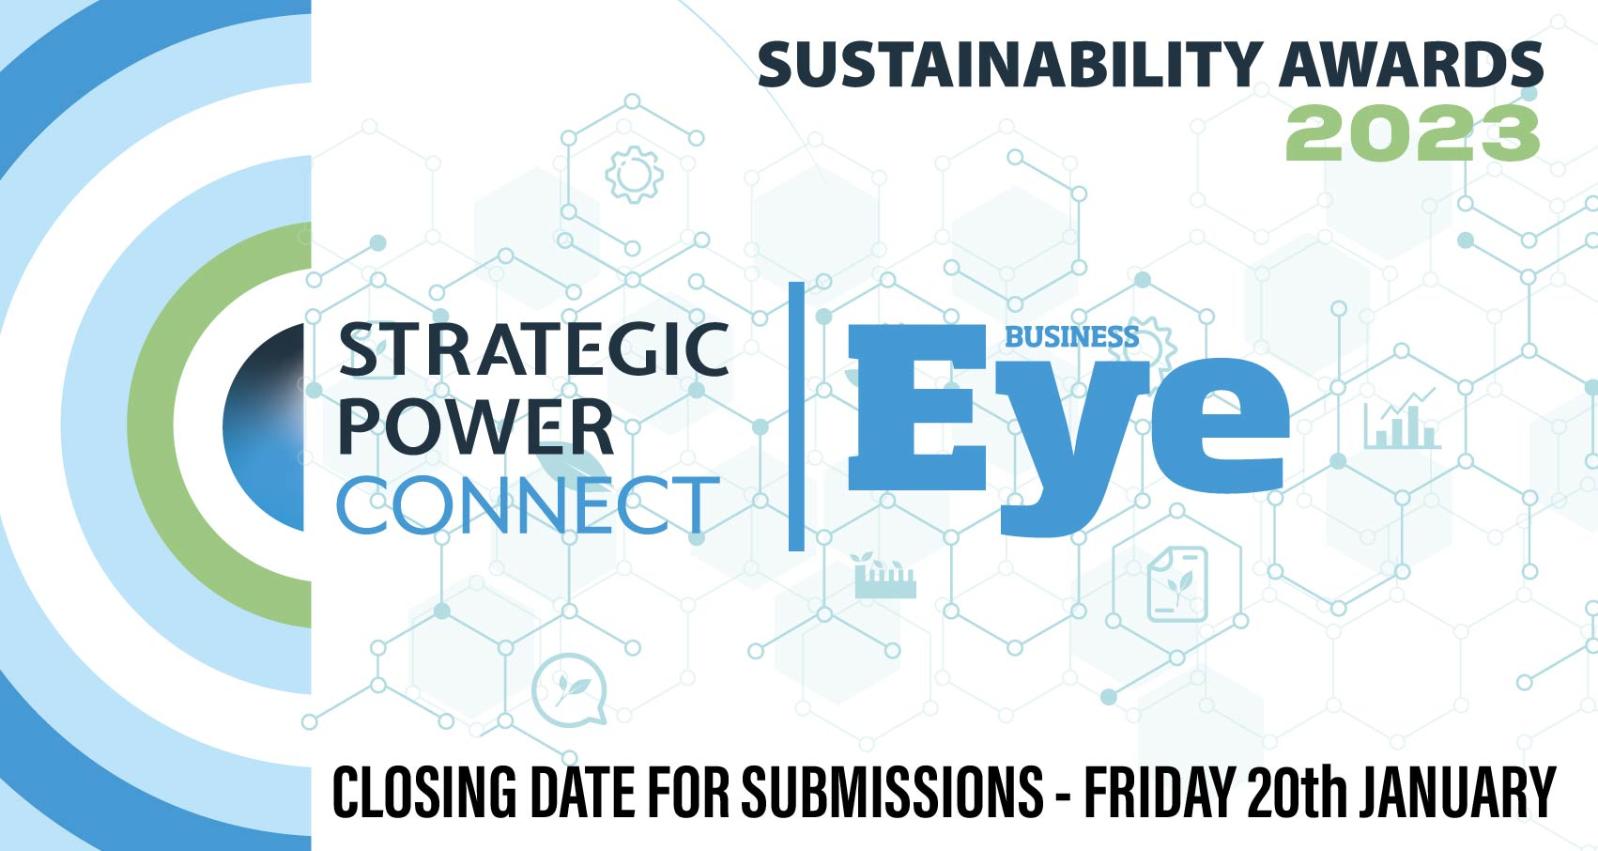 Business Eye Sustainability Awards 800